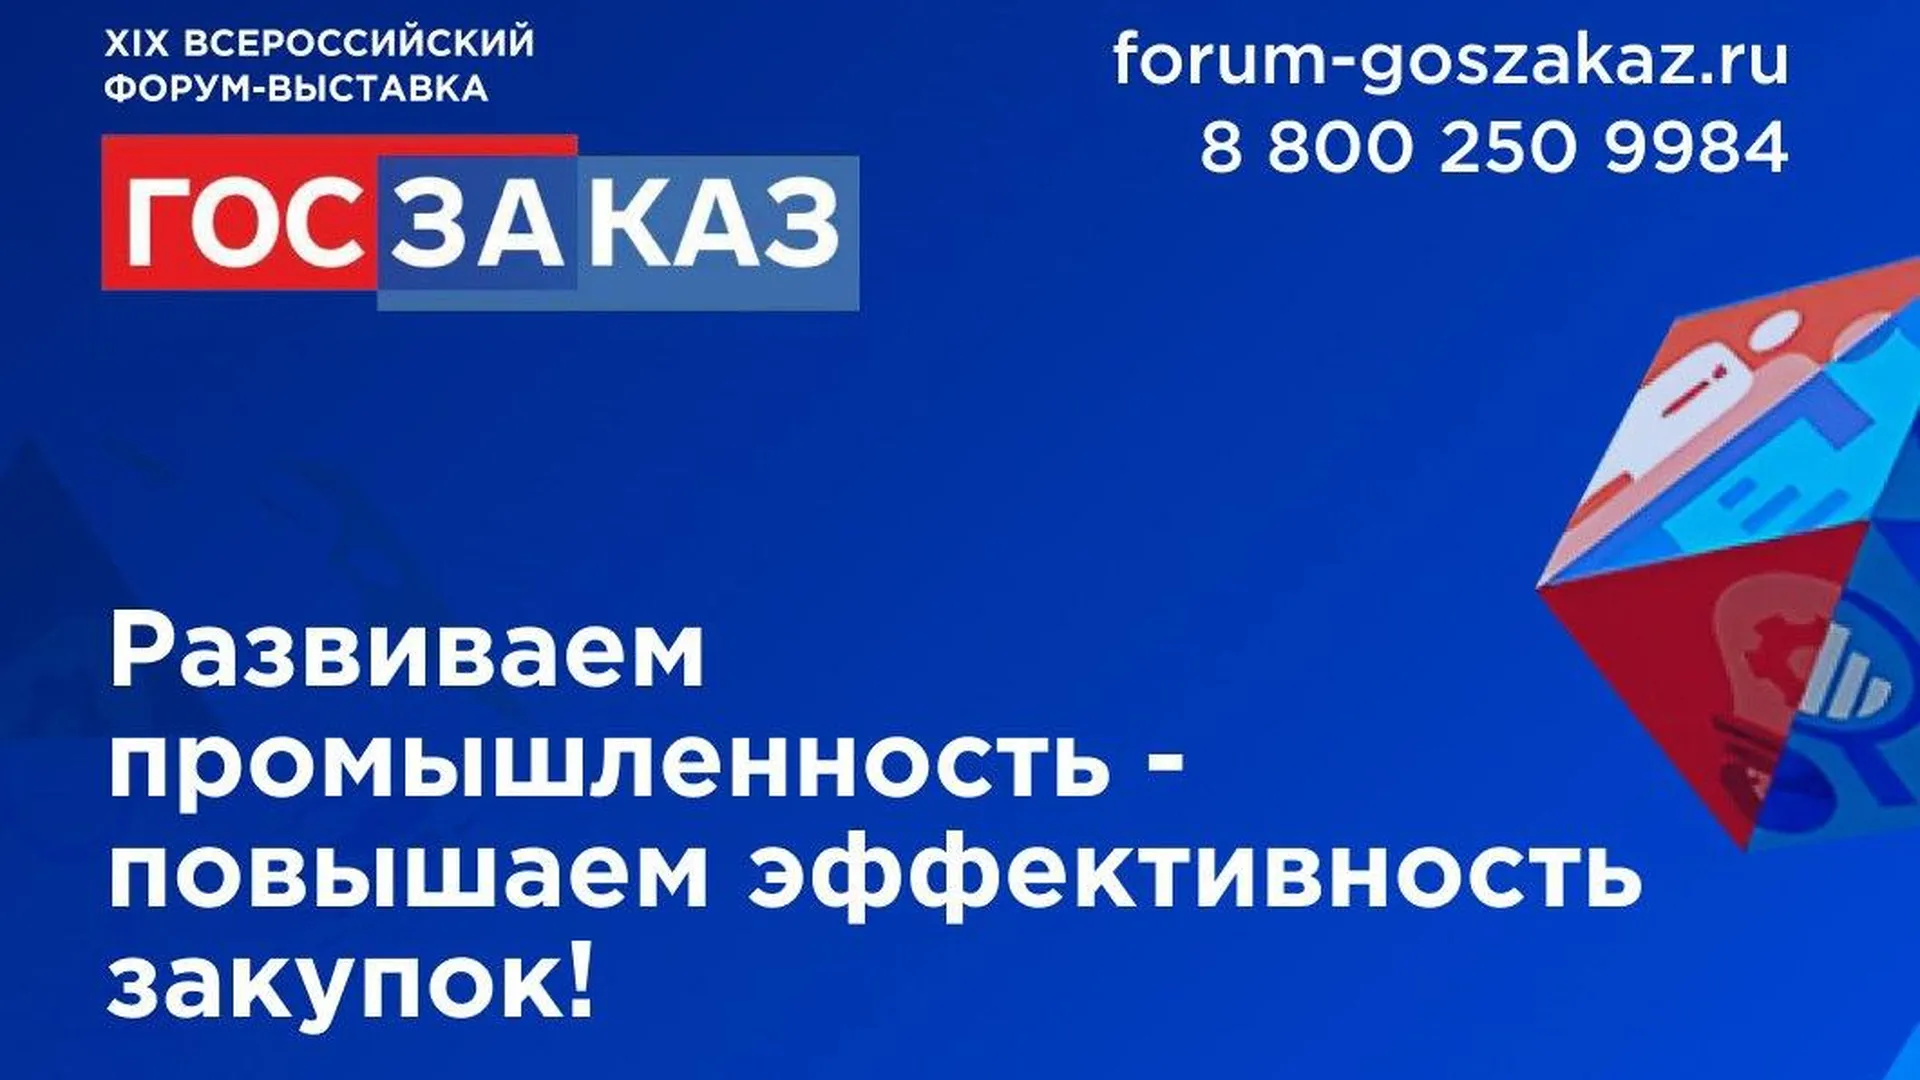 В столице пройдет XIX Всероссийский Форум‑выставка «ГОСЗАКАЗ»